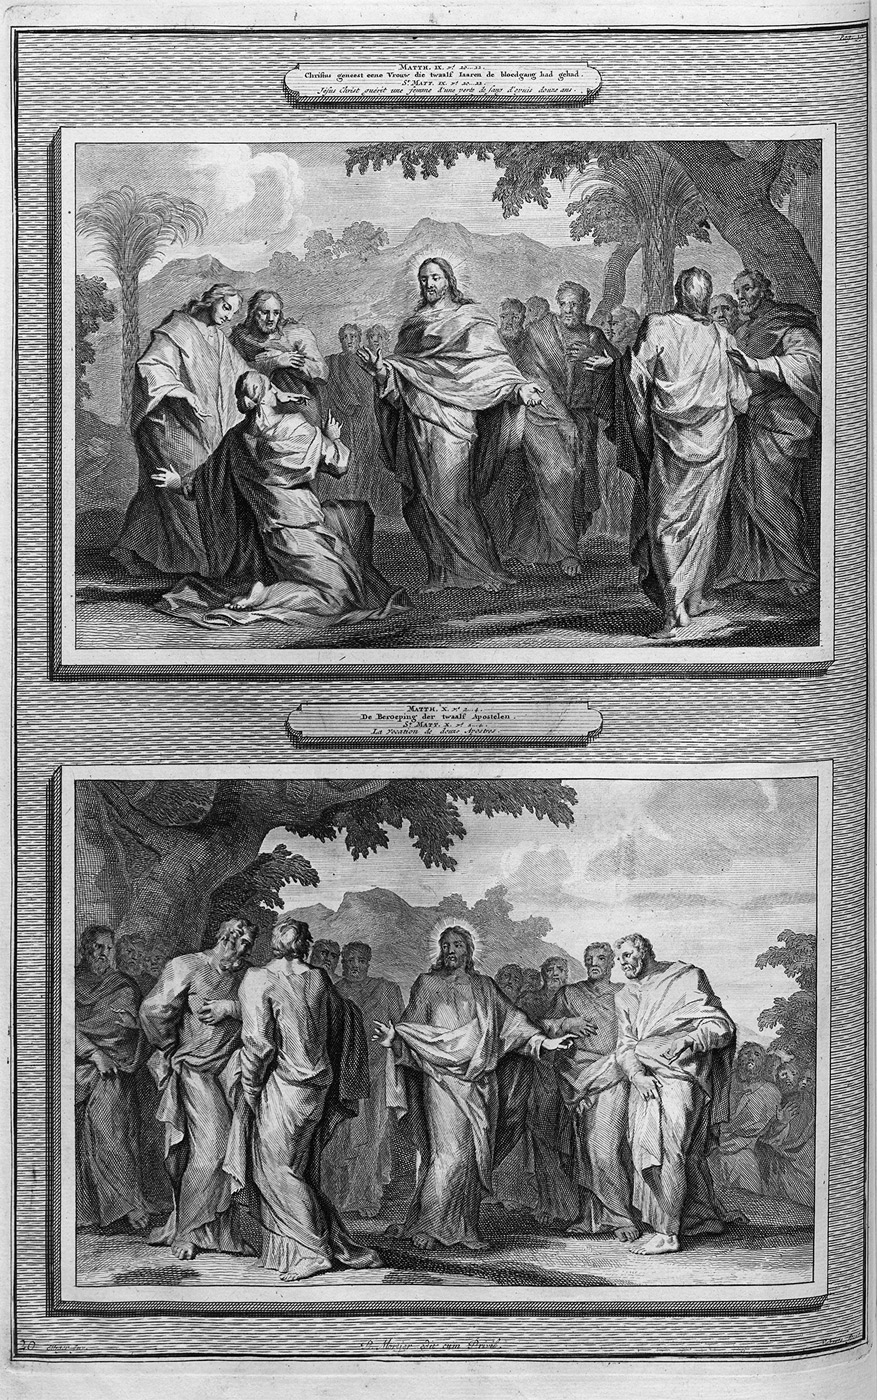 Lot 1220, Auction  115, Biblia gallica, Histoire du Vieux et du Nouveau Testament